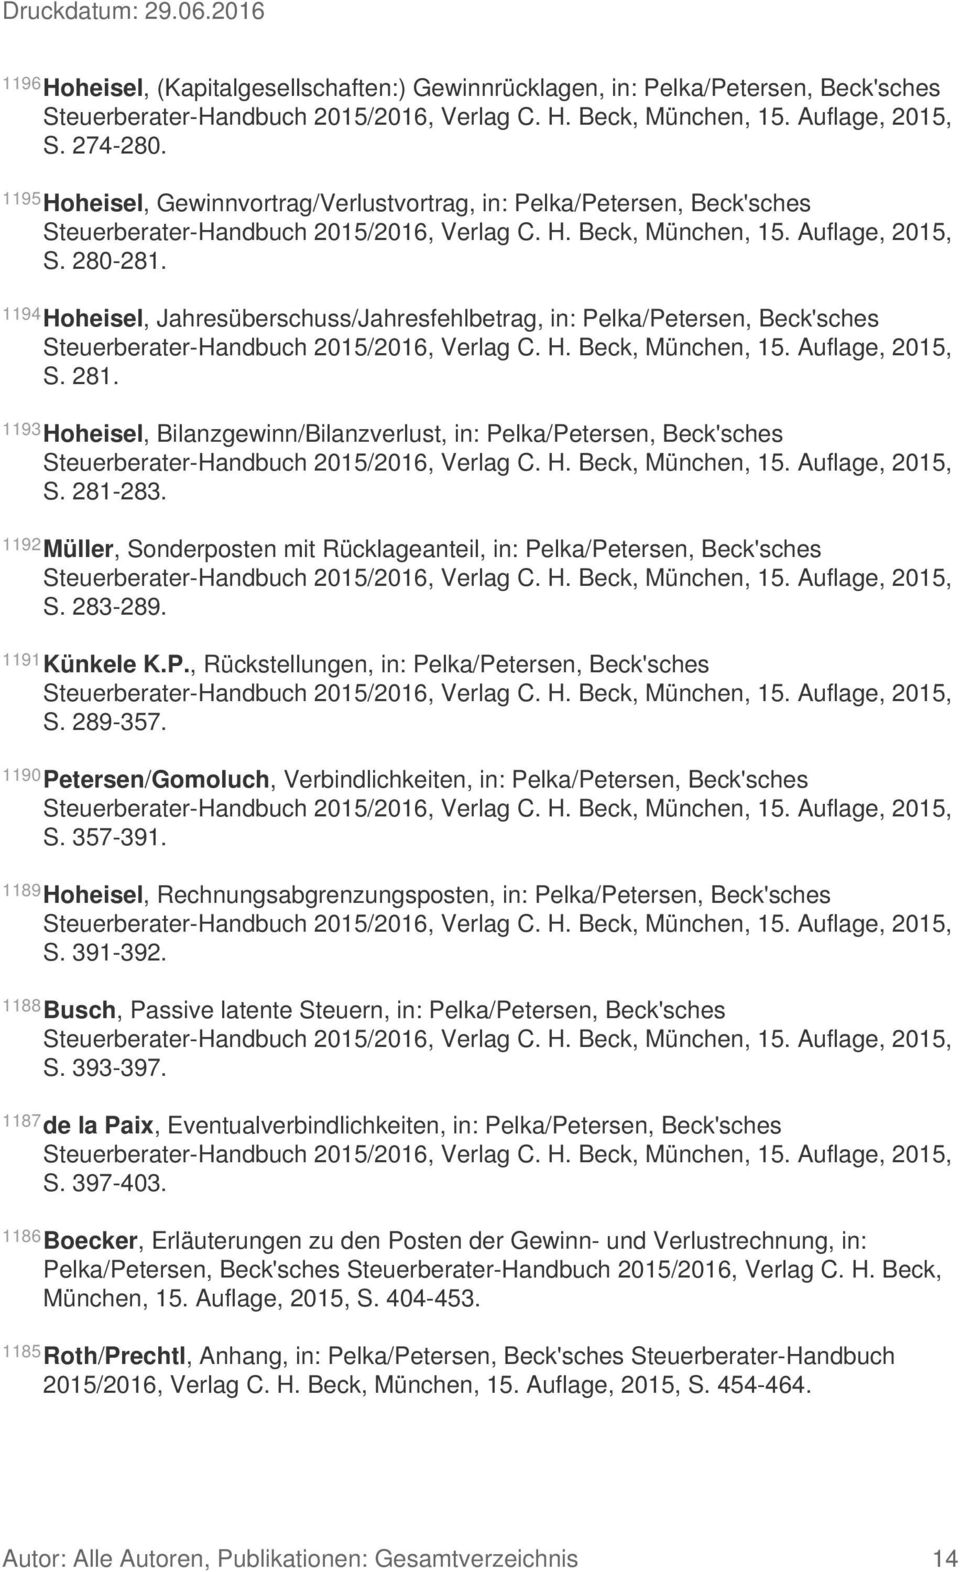 1194 Hoheisel, Jahresüberschuss/Jahresfehlbetrag, in: Pelka/Petersen, Beck'sches Steuerberater-Handbuch 2015/2016, Verlag C. H. Beck, München, 15. Auflage, 2015, S. 281.